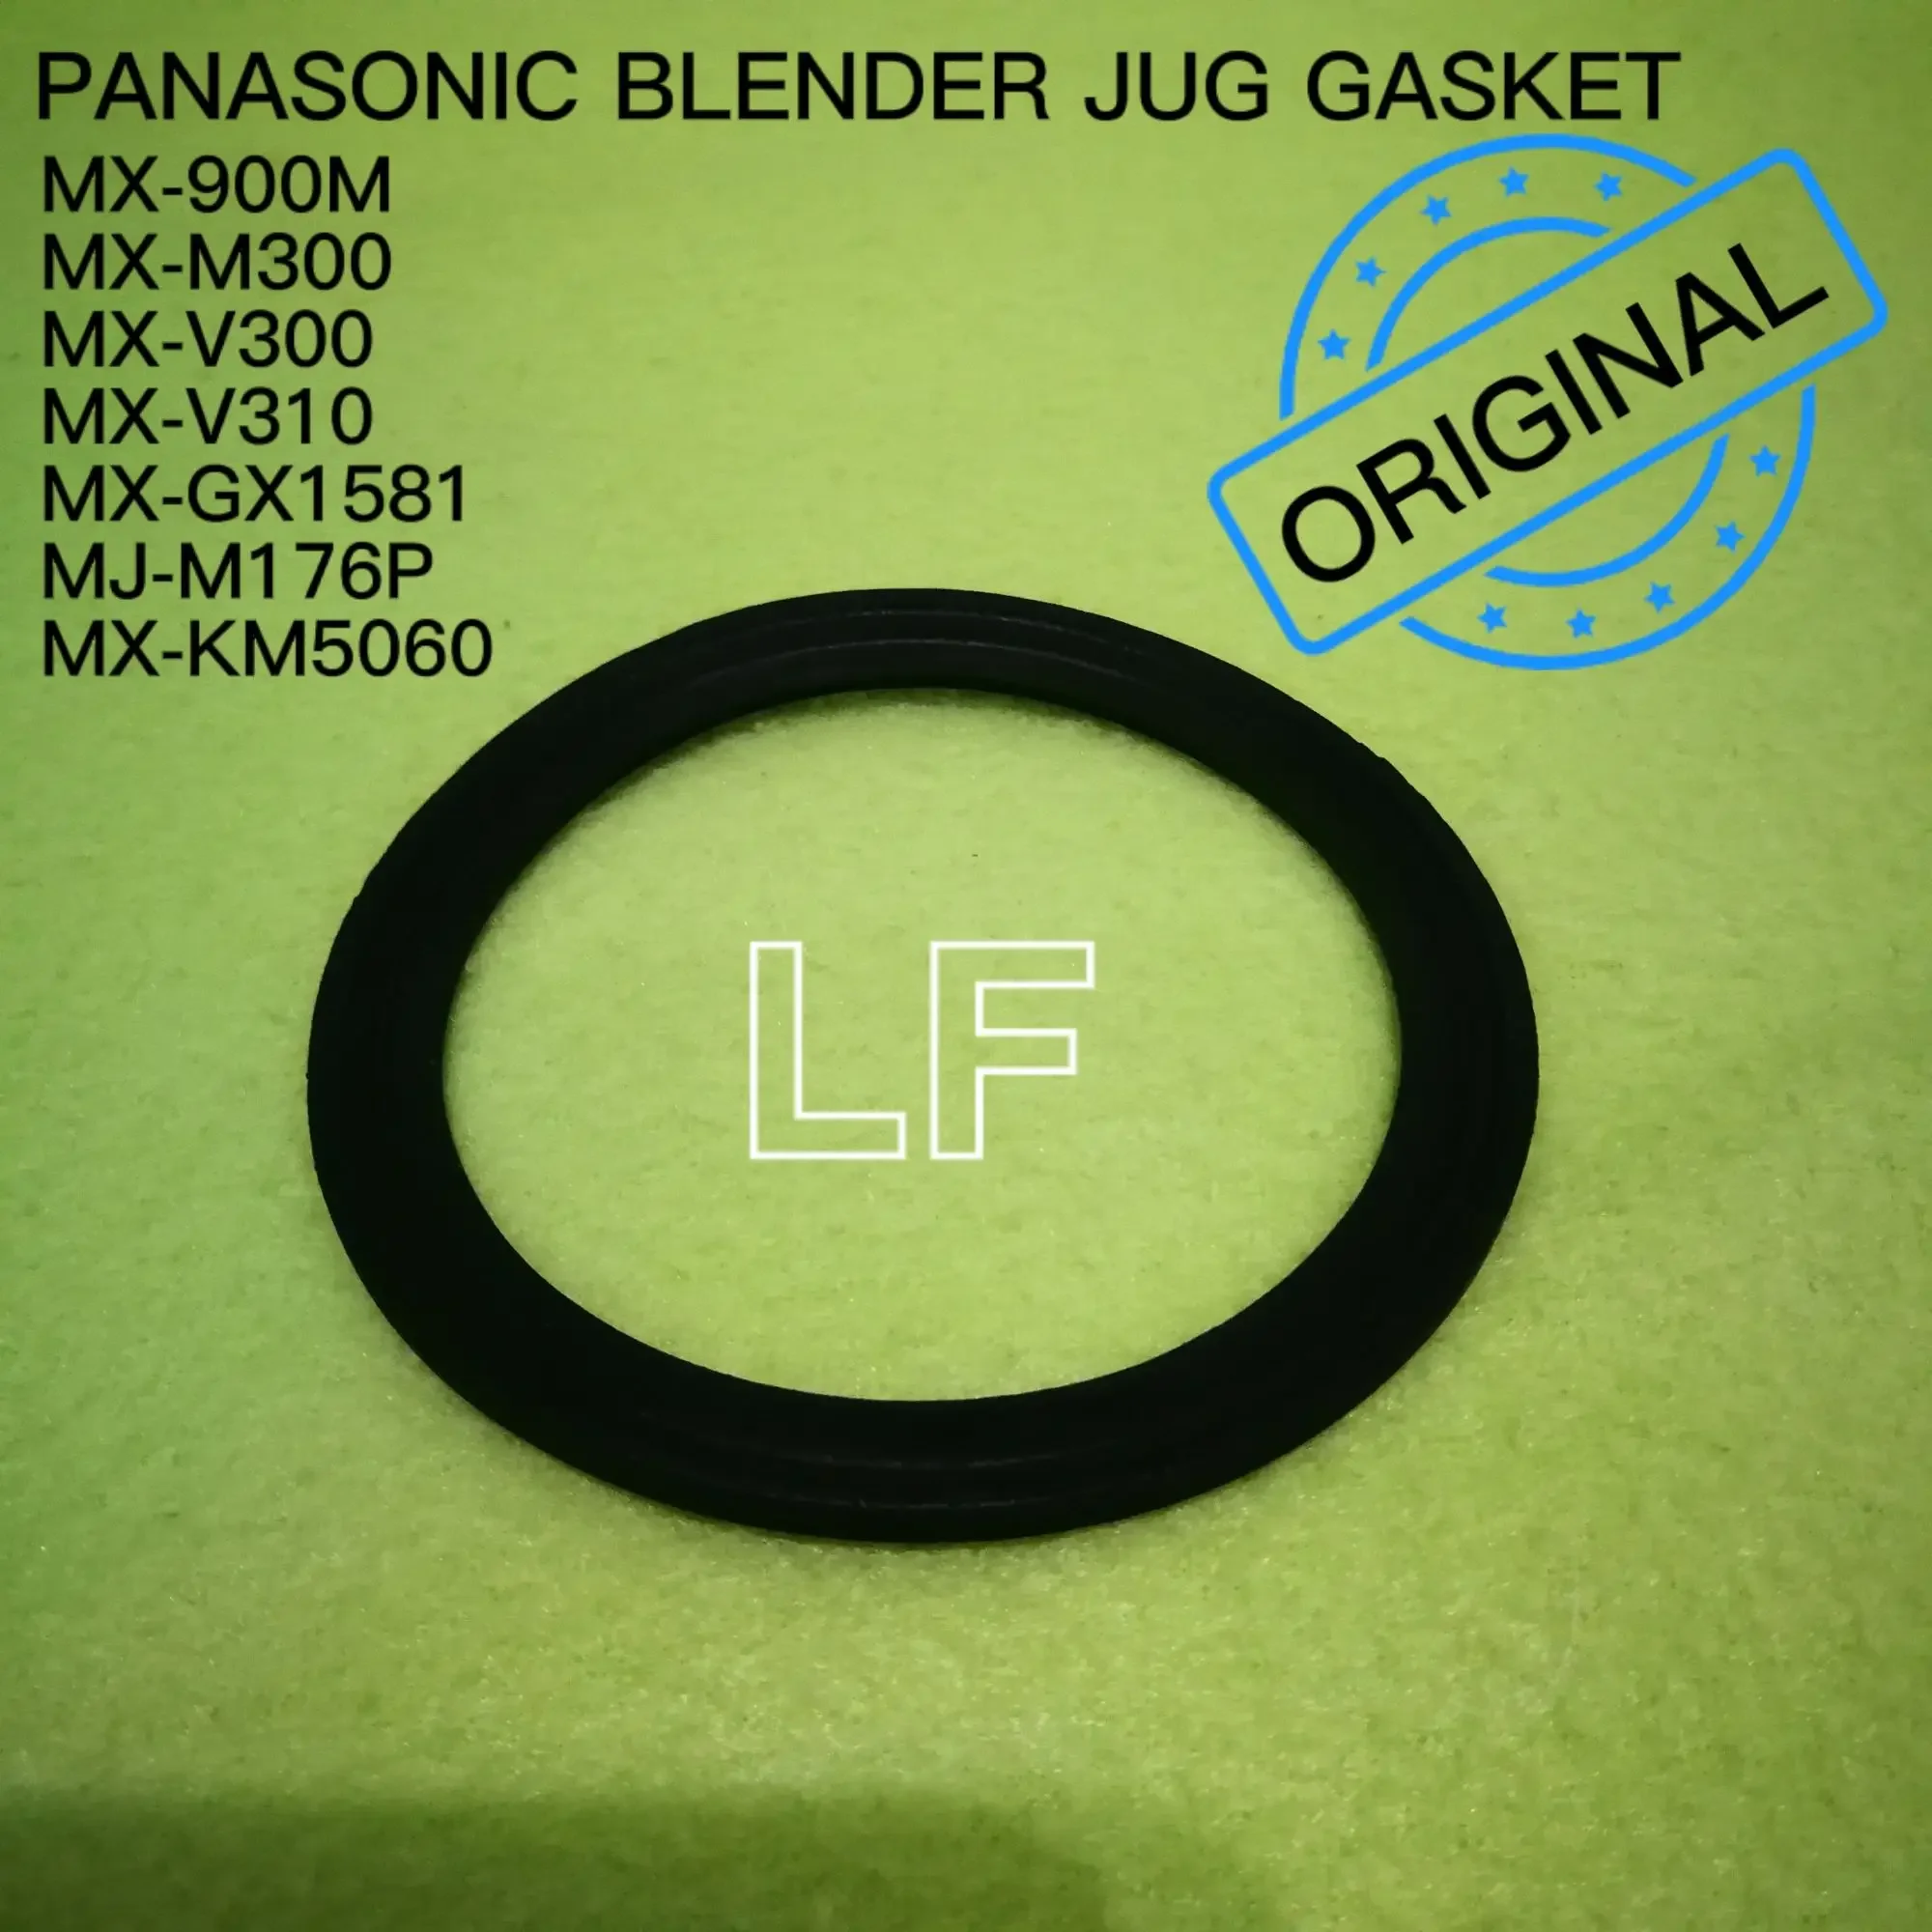 Panasonic MX-900M MX-M300 MX-V300 MX-V310 MX-GX1581 MJ-M176P MX-KM5060 Blender Jug Gasket